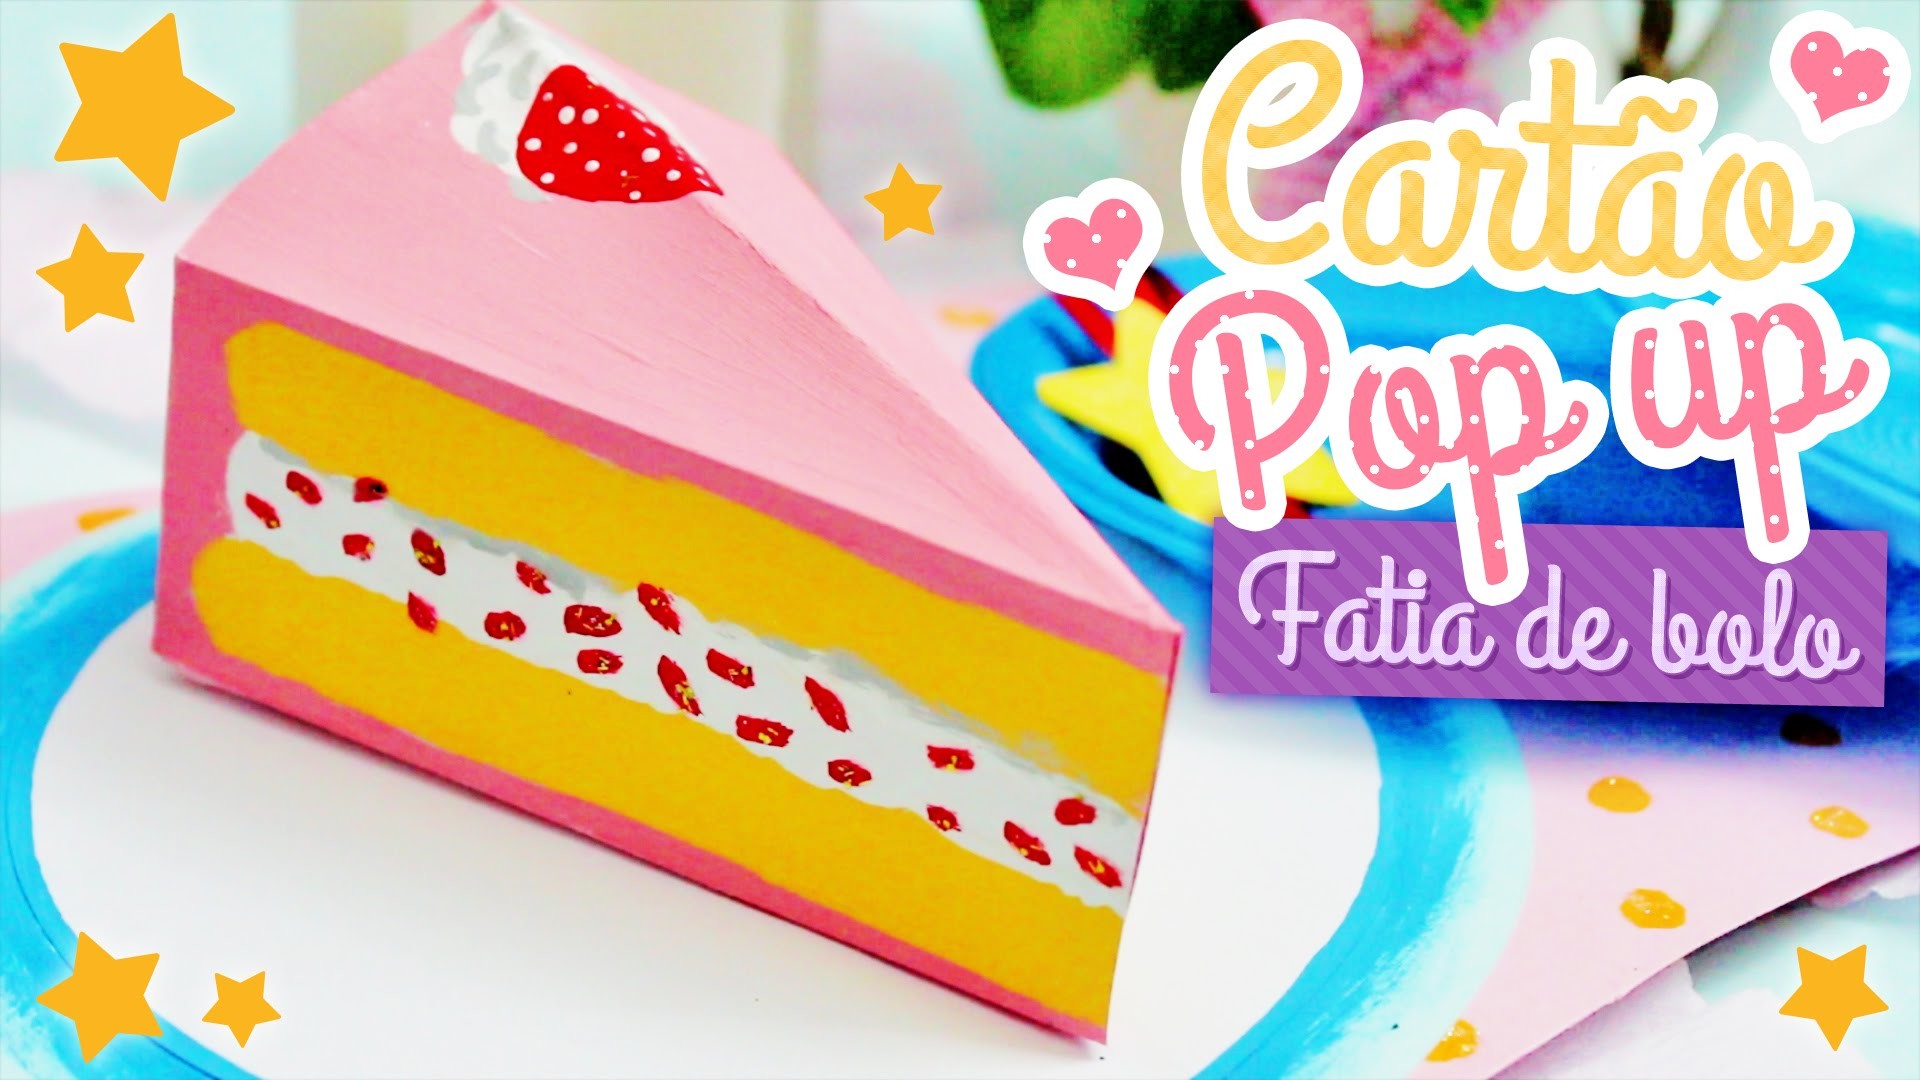 DIY: Cartão Pop up Bolo | Cake Pop up Card